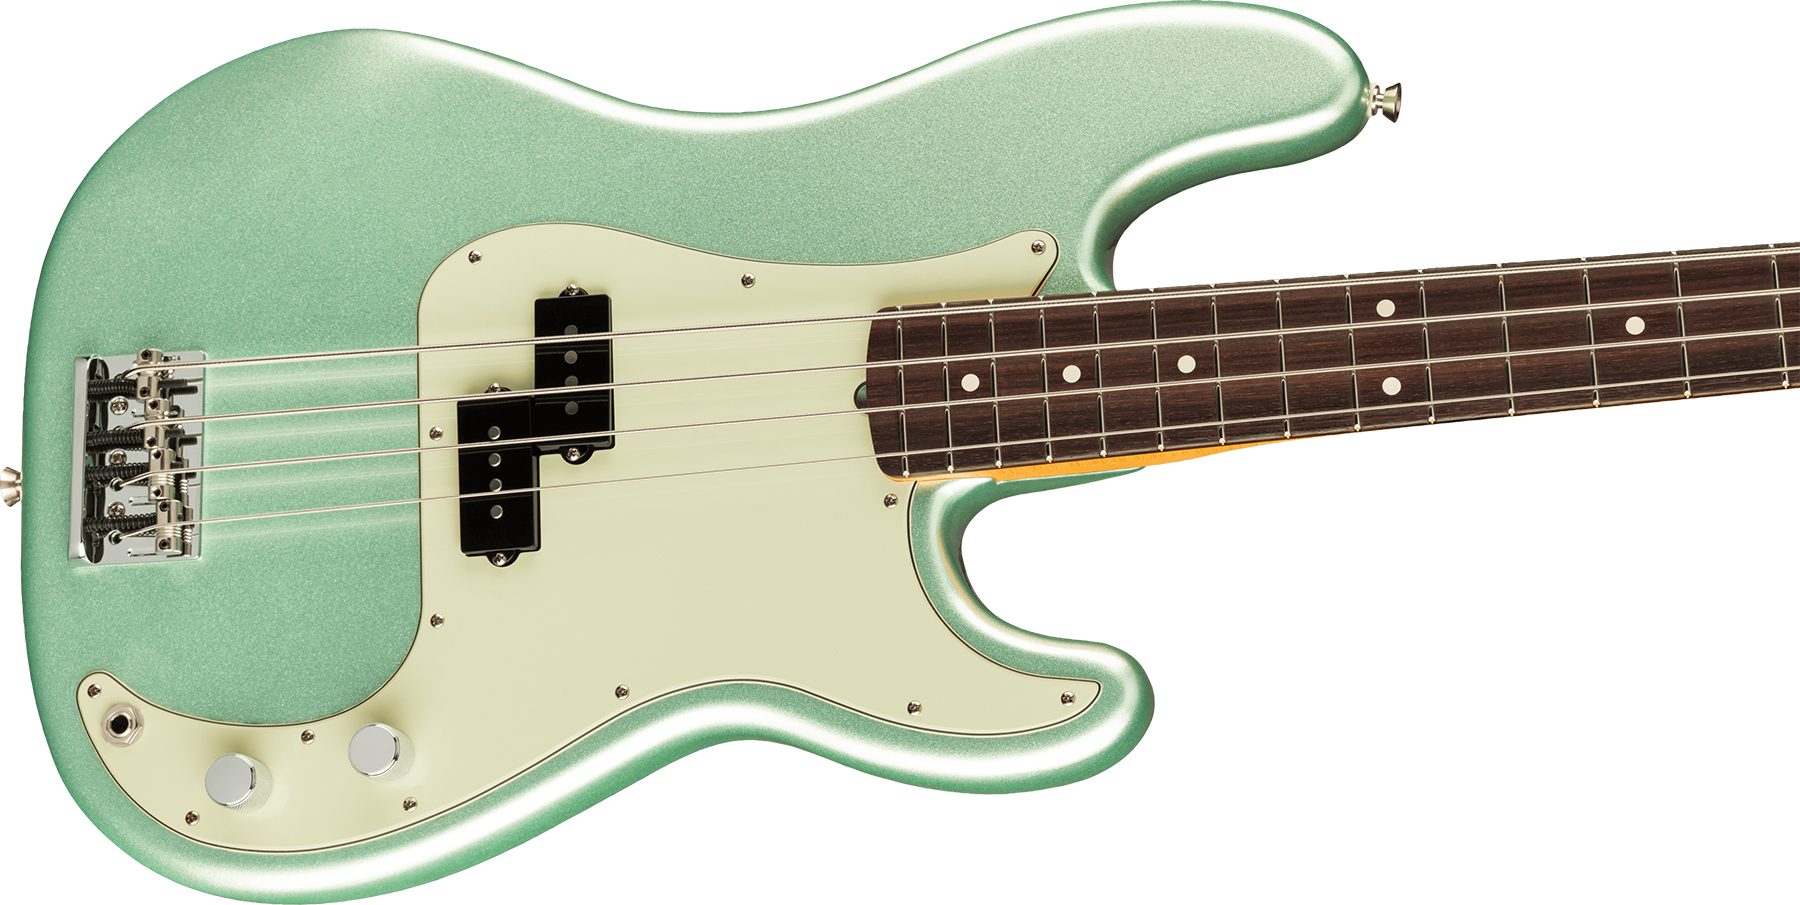 Fender Precision Bass American Professional Ii Usa Rw - Mystic Surf Green - Bajo eléctrico de cuerpo sólido - Variation 2